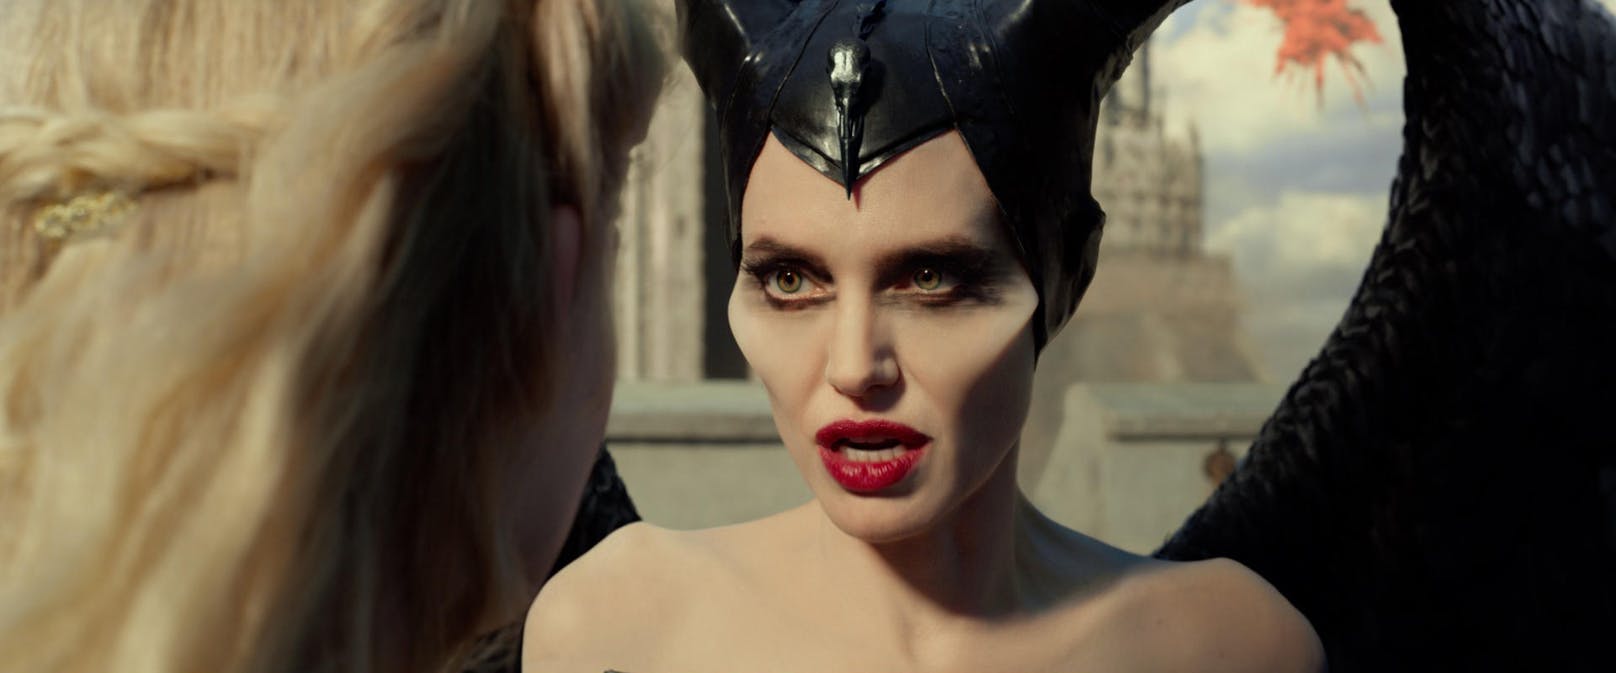 Schlecht drauf: Maleficent (Angelina Jolie) ist nicht begeistert davon, bald die Schwiegermutter eines Prinzen zu werden